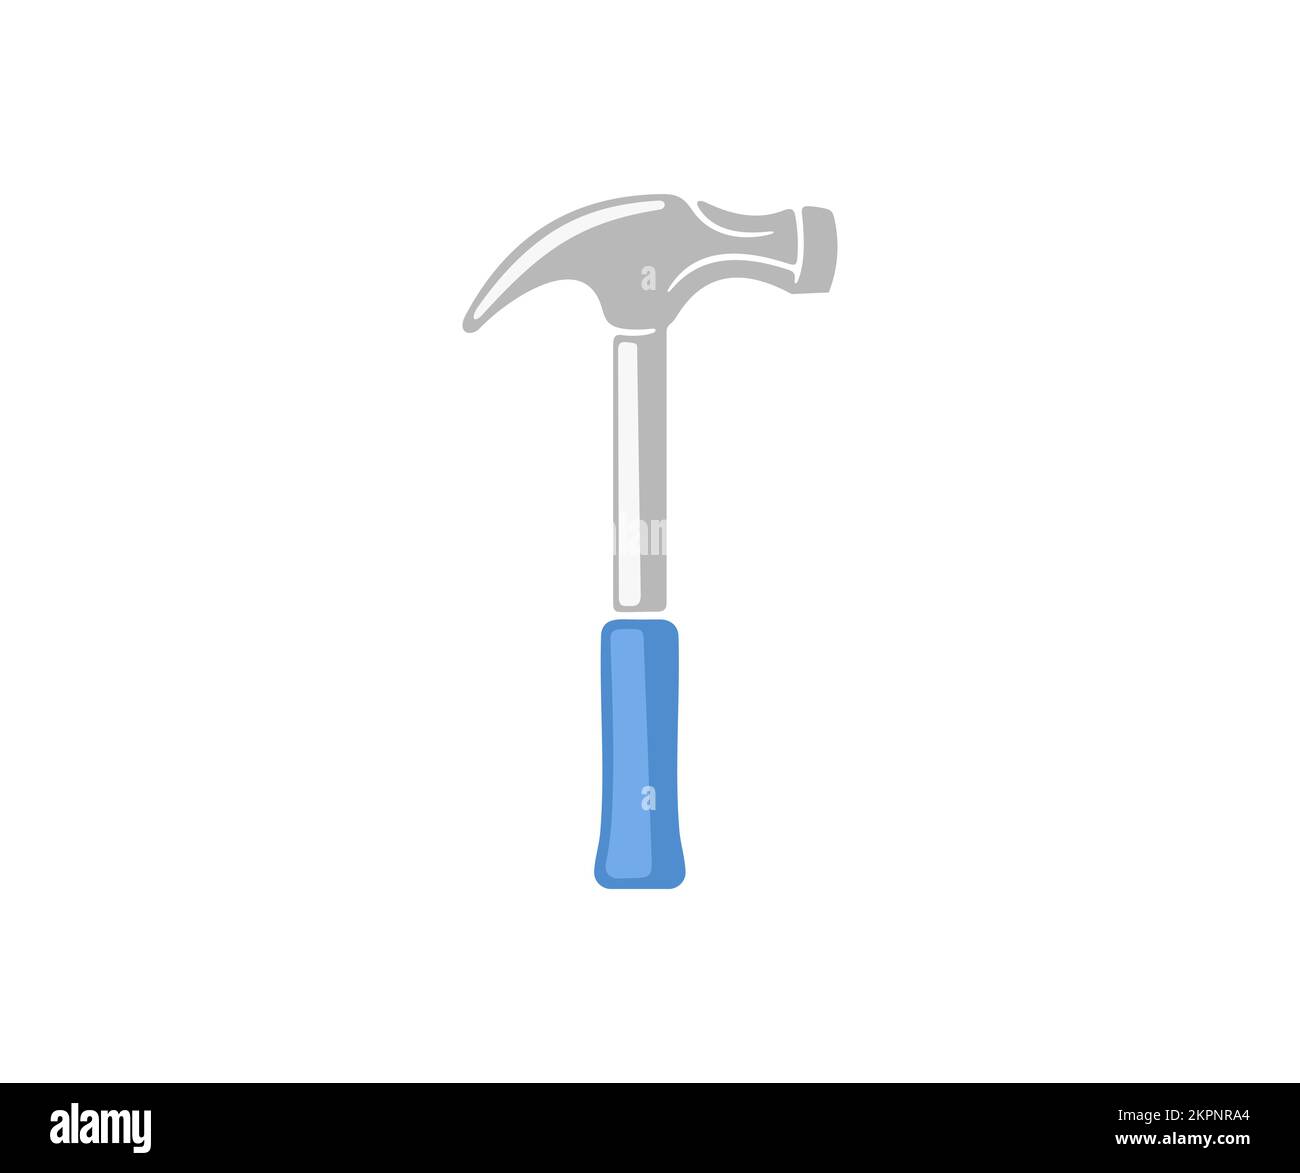 Hammer mit gummiertem Griff, Werkzeug, Nagelzieher, Schreiner- und Schreinerwerkzeug, Grafikdesign. Arbeits- und Bauwerkzeug, Renovierung, Reparatur Stock Vektor